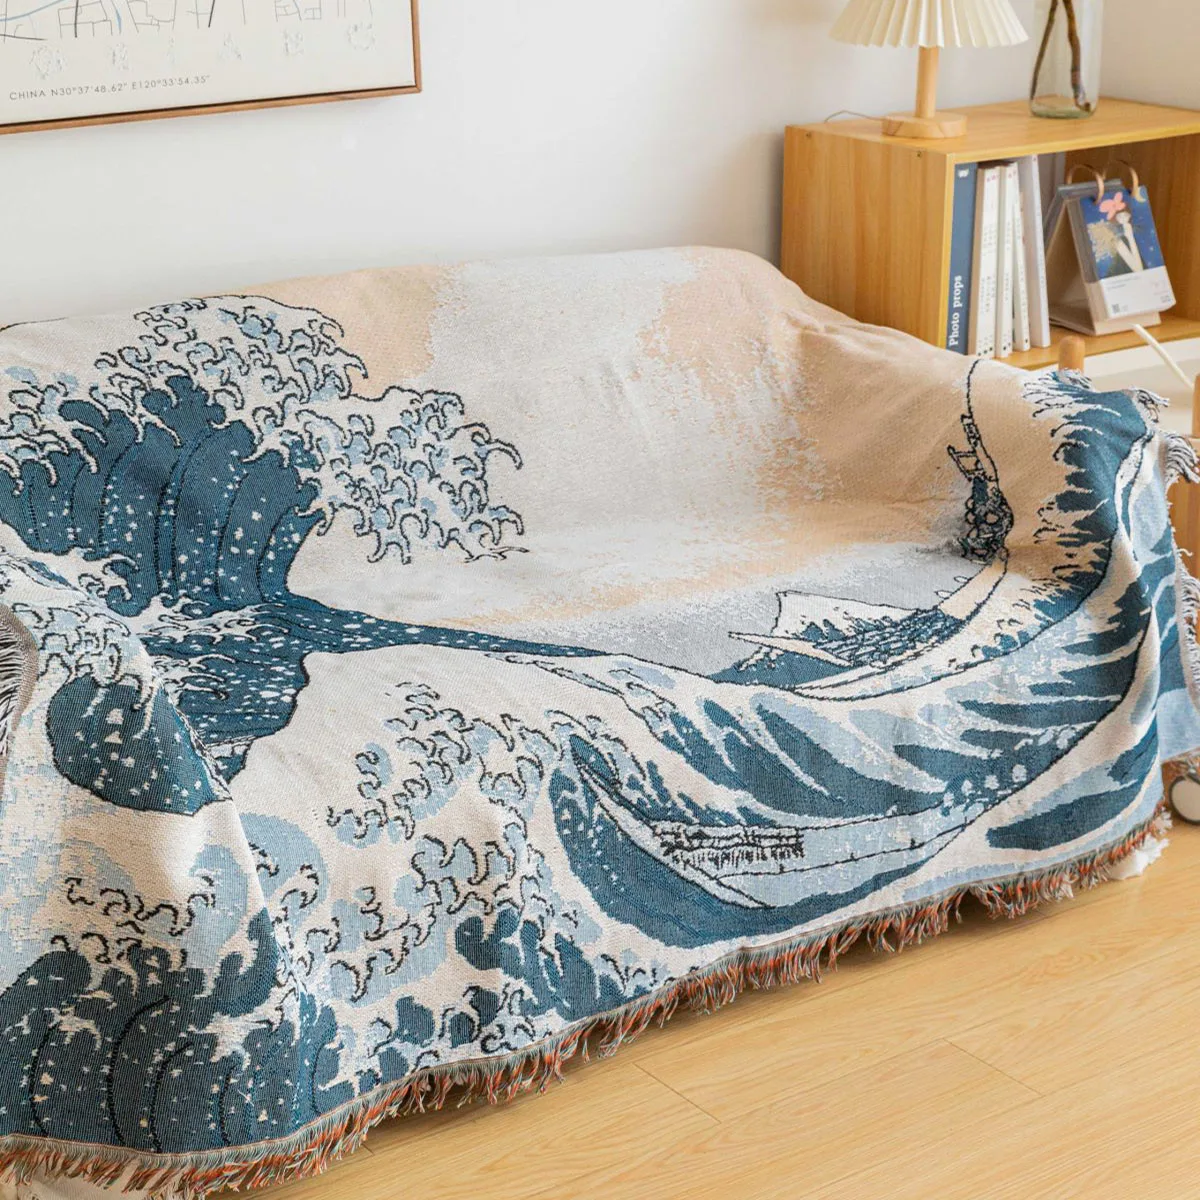 Покрывало для дивана с японской океанской волной, офисное покрывало для сна, декоративное покрывало для односпального дивана 0